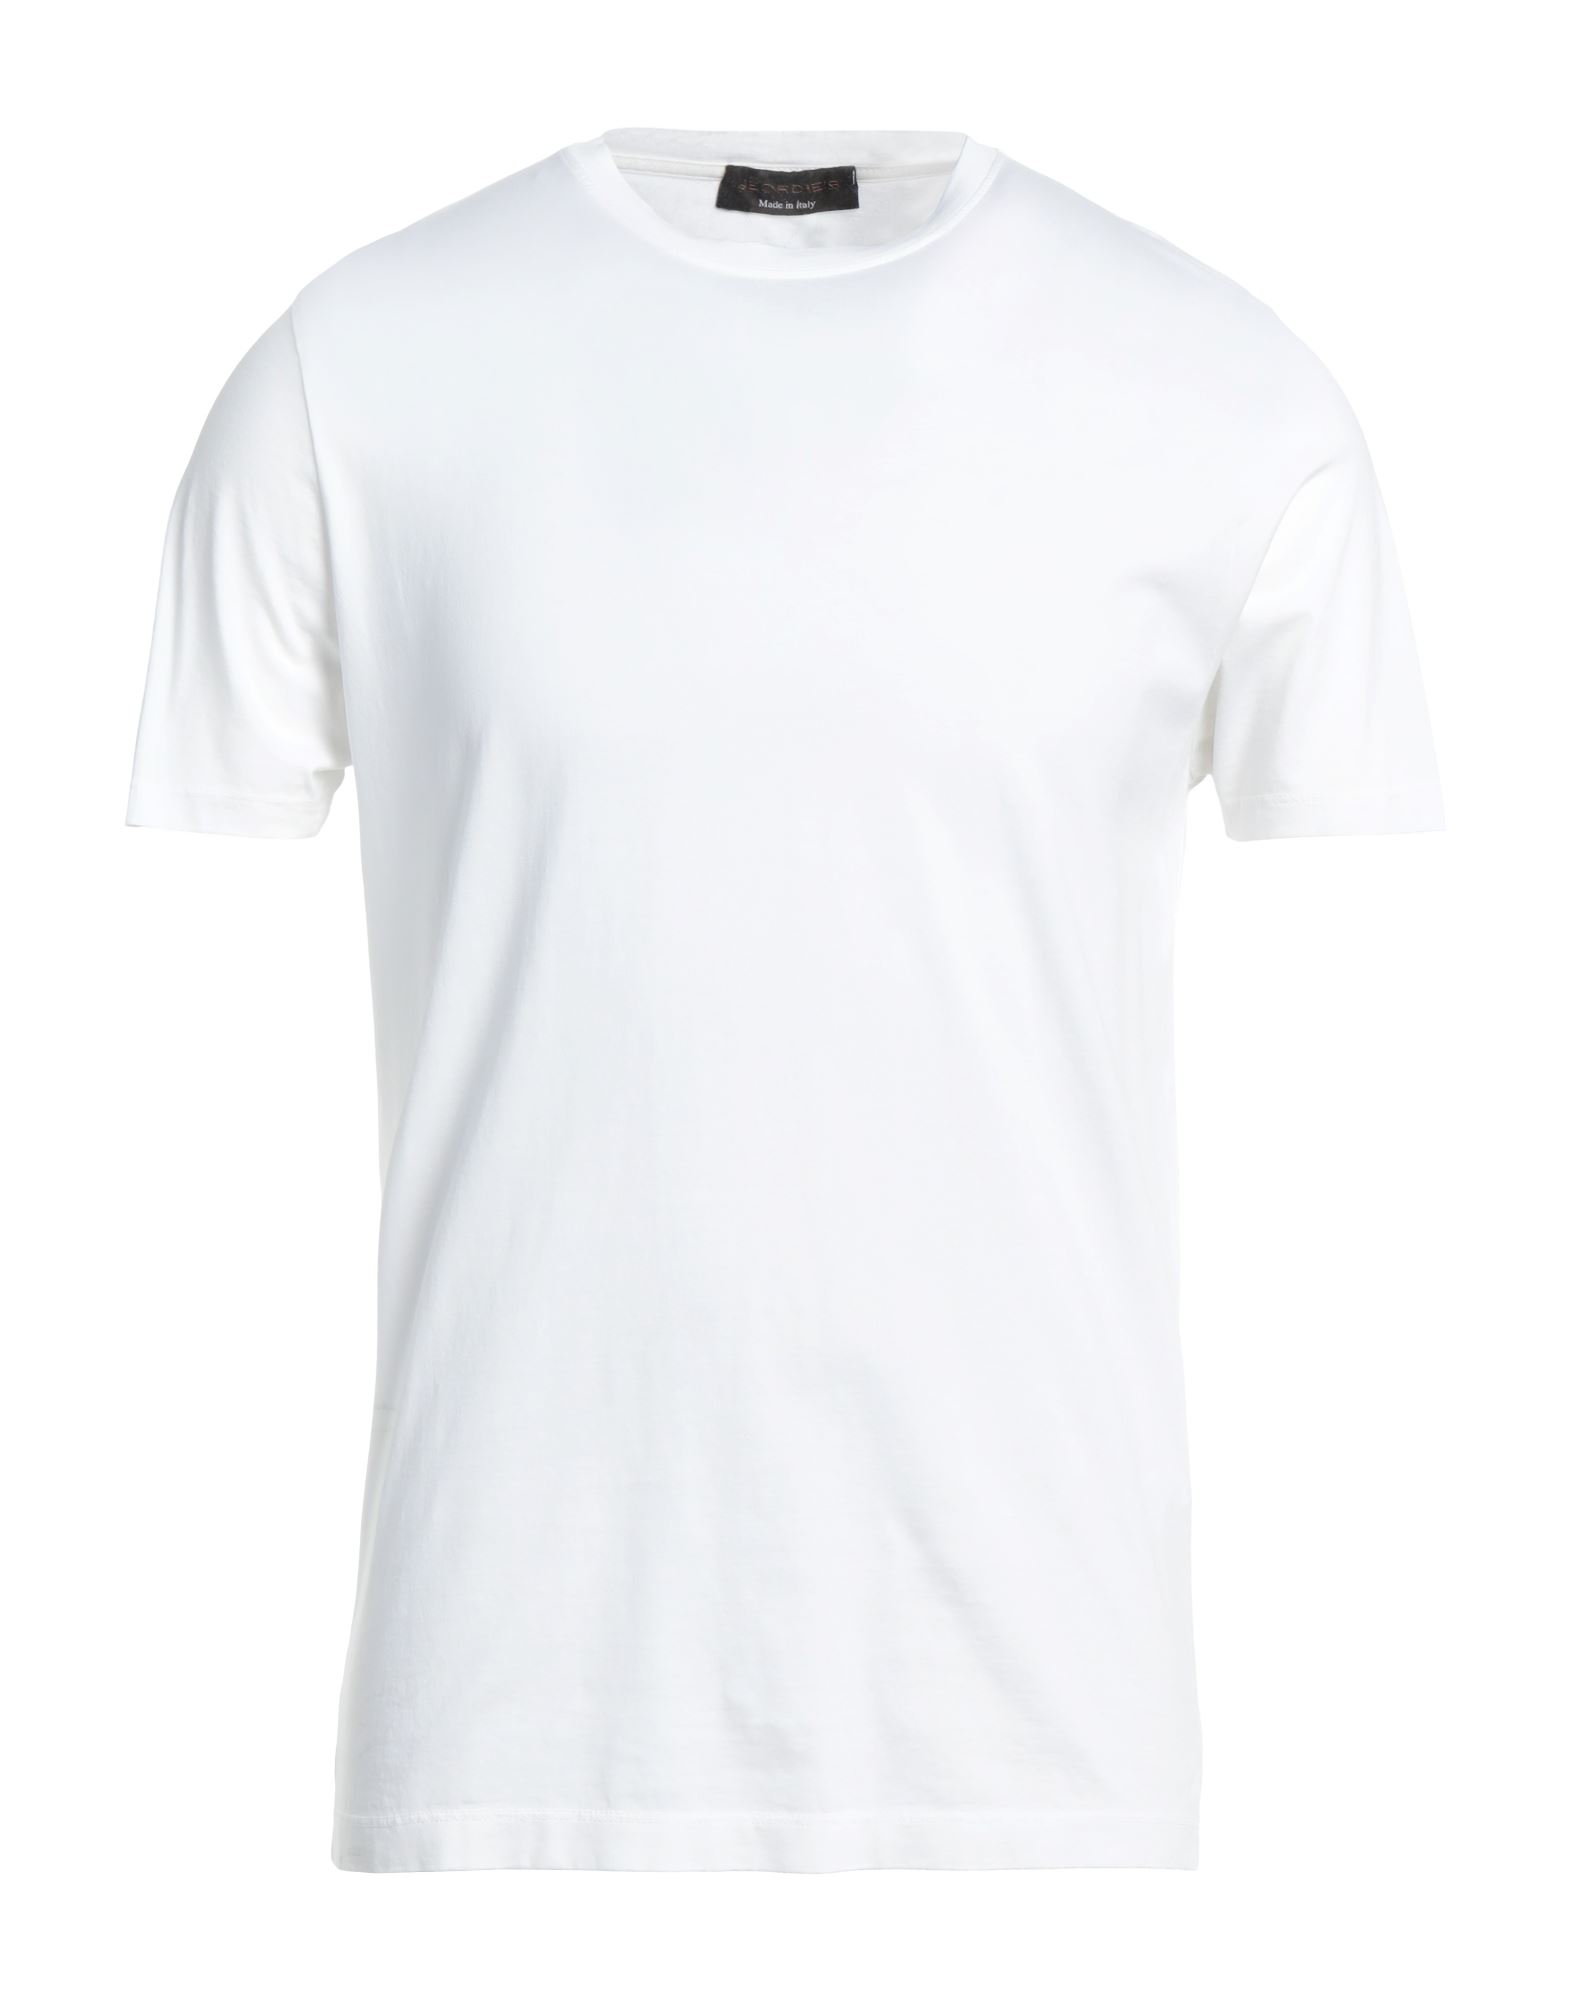 Shop Jeordie's Man T-shirt White Size 3xl Supima